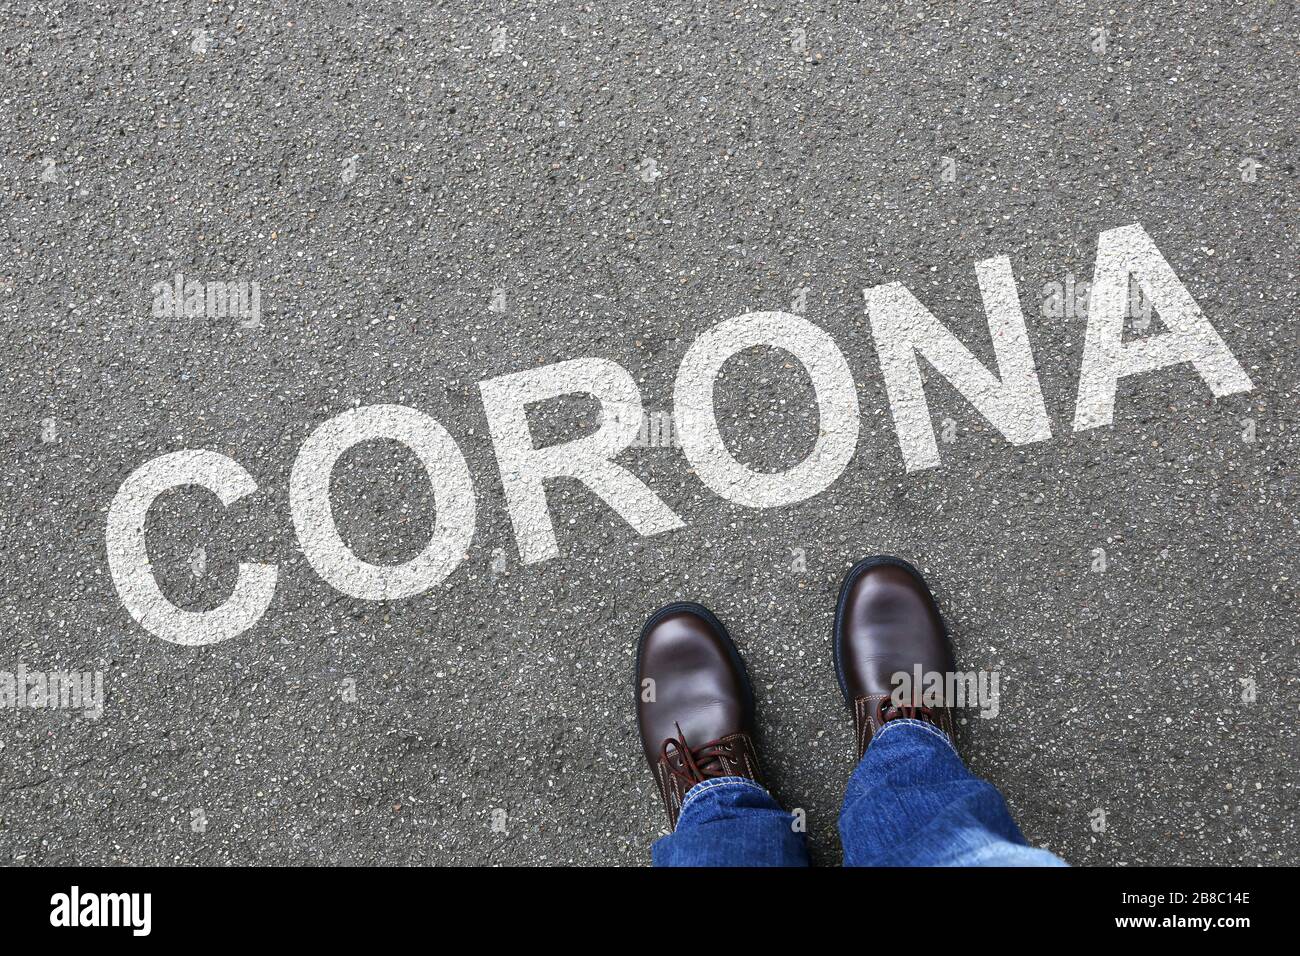 Corona virus coronavirus man business concept illness disease Stock Photo